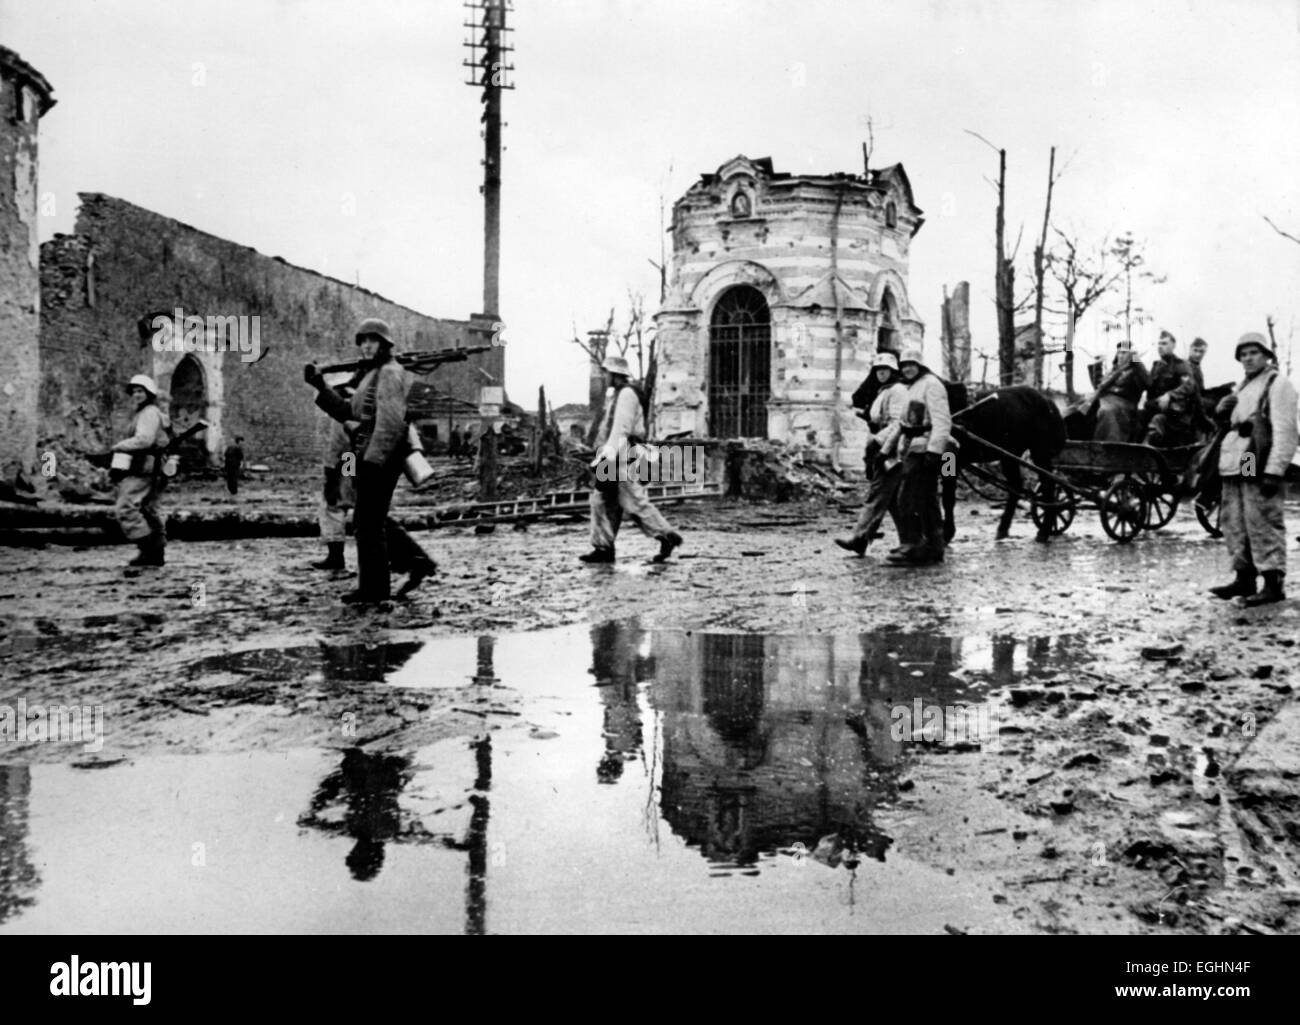 Une image de propagande nazie montre des fantassins du Waffen-SS marchant à travers les ruines de la ville détruite de Narva sur le front de Narva pendant la Seconde Guerre mondiale en avril 1944. Fotoarchiv für Zeitgeschichtee - PAS DE SERVICE DE VIREMENT - Banque D'Images